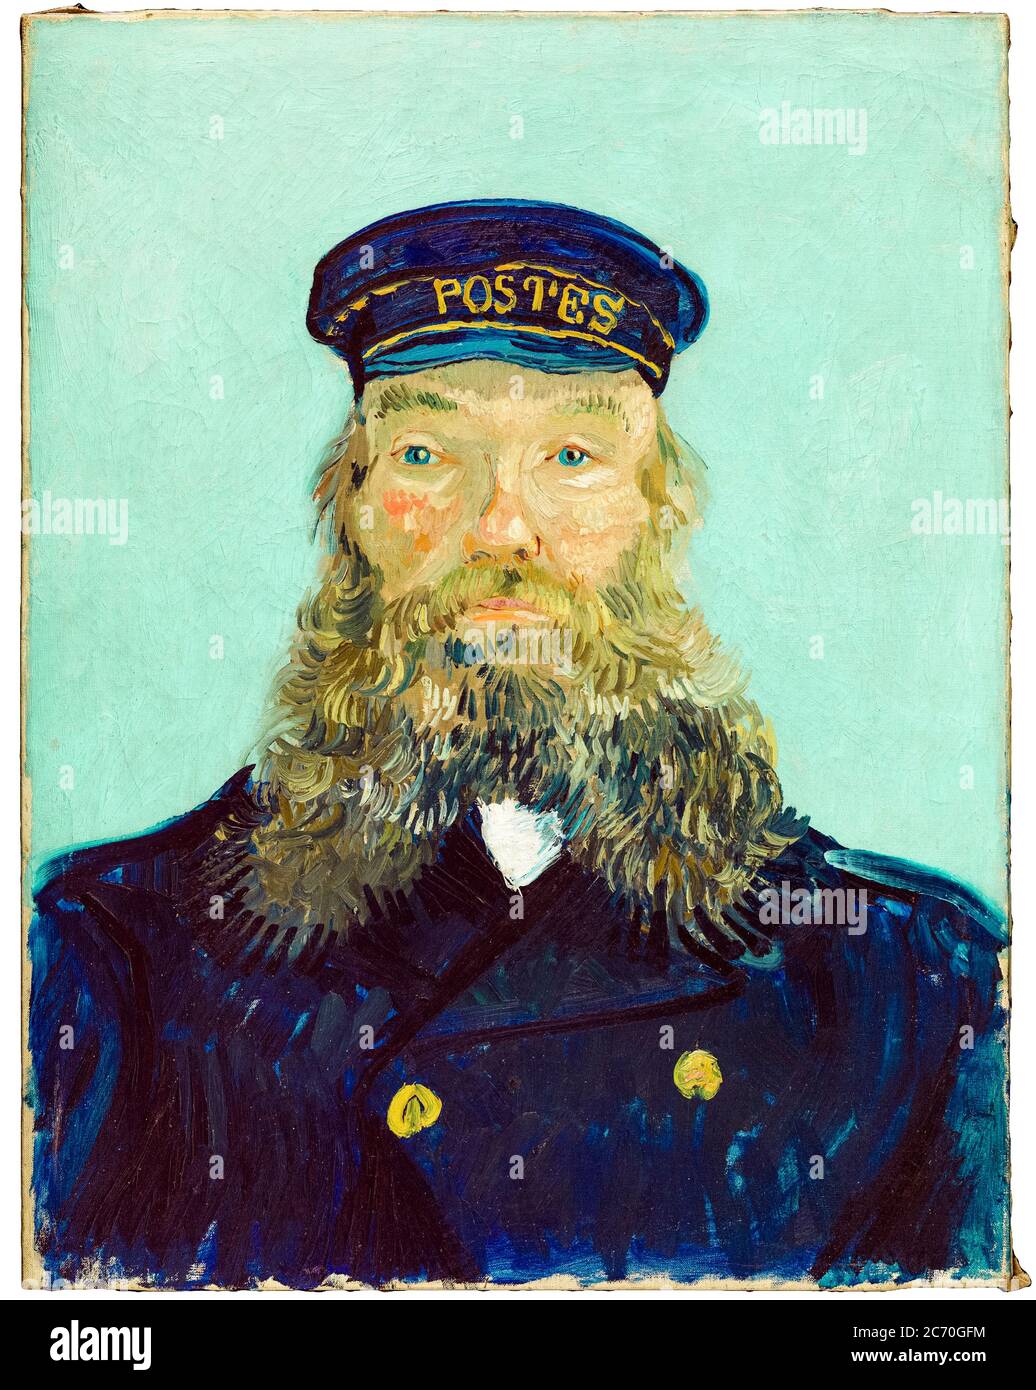 Vincent Van Gogh, Retrato del Postman Roulin, pintura, 1888 Foto de stock